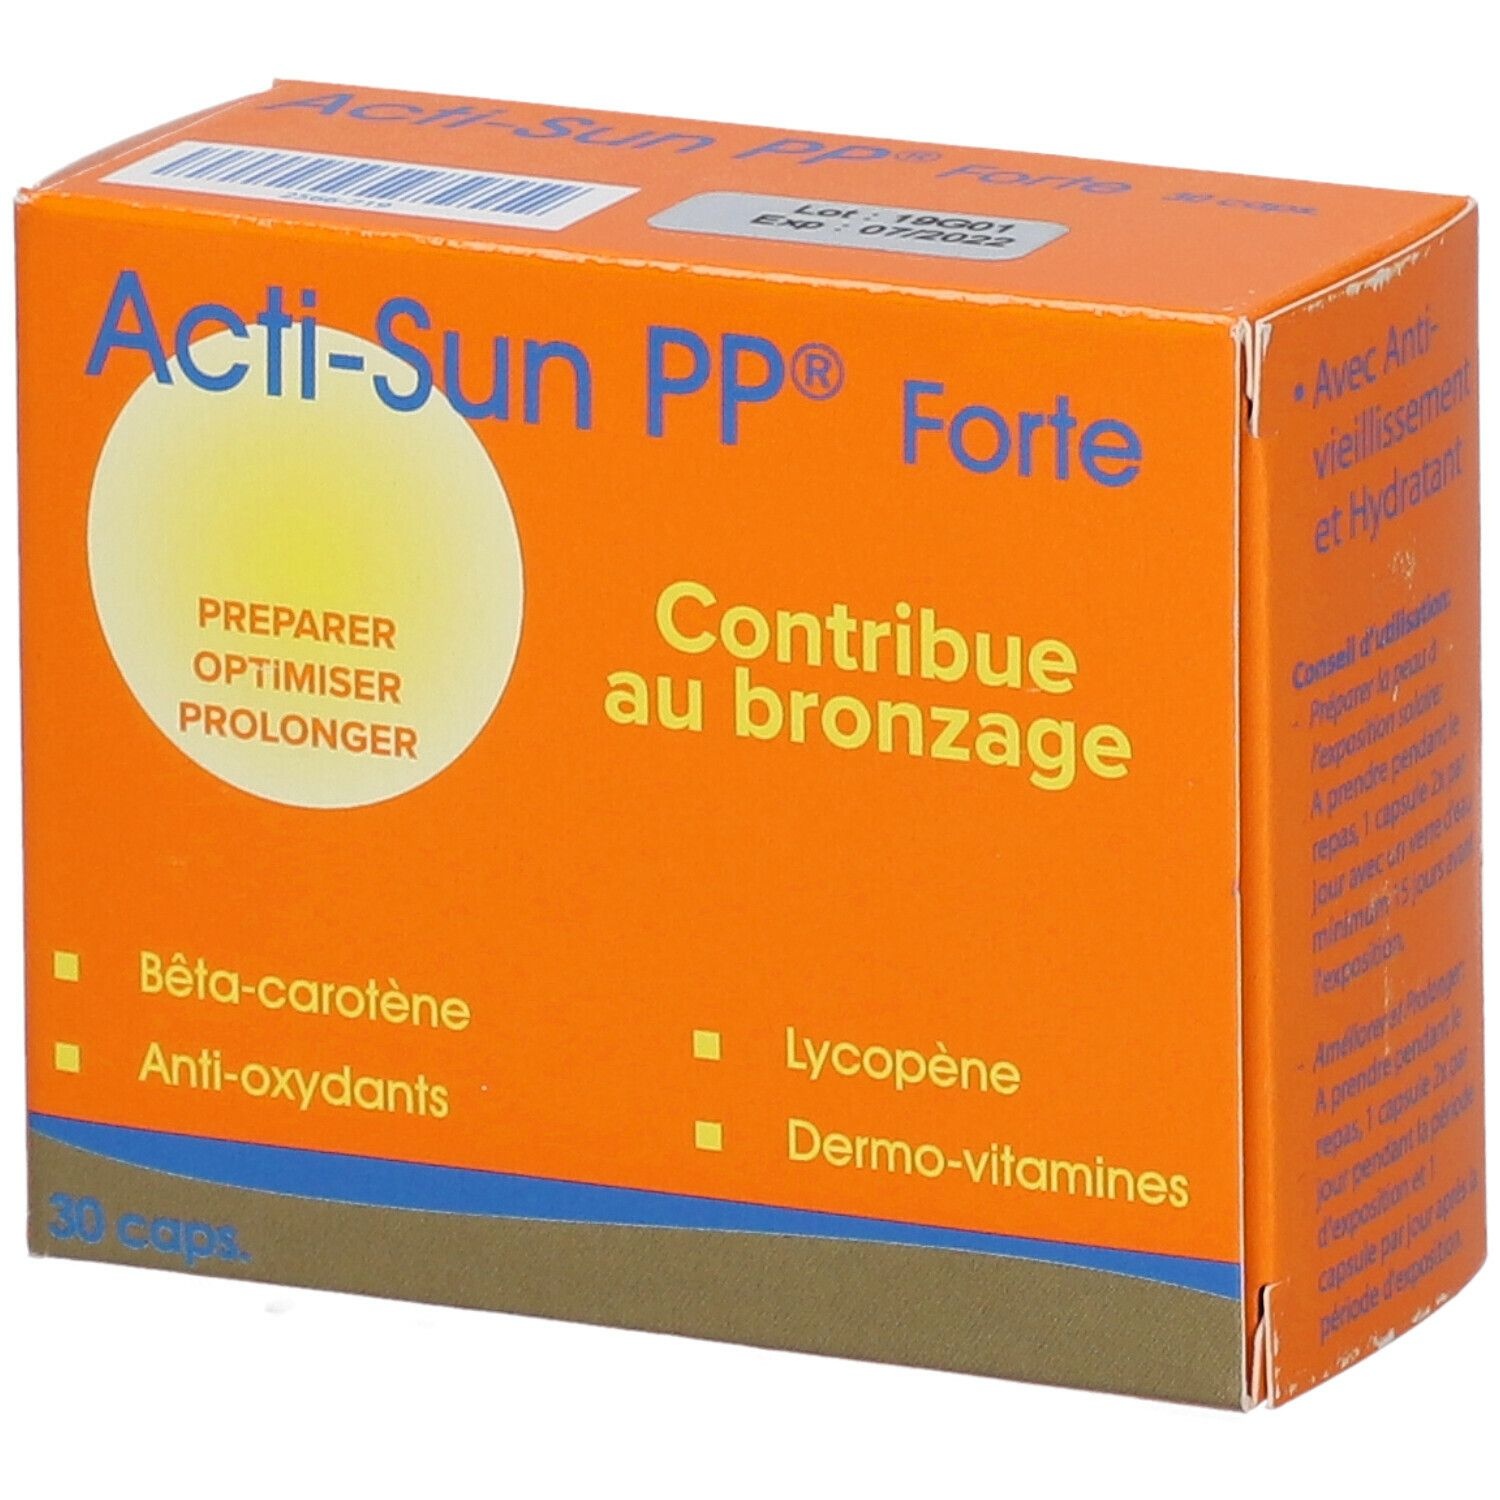 Acti-Sun PP® Forte 30 pc(s) capsule(s)